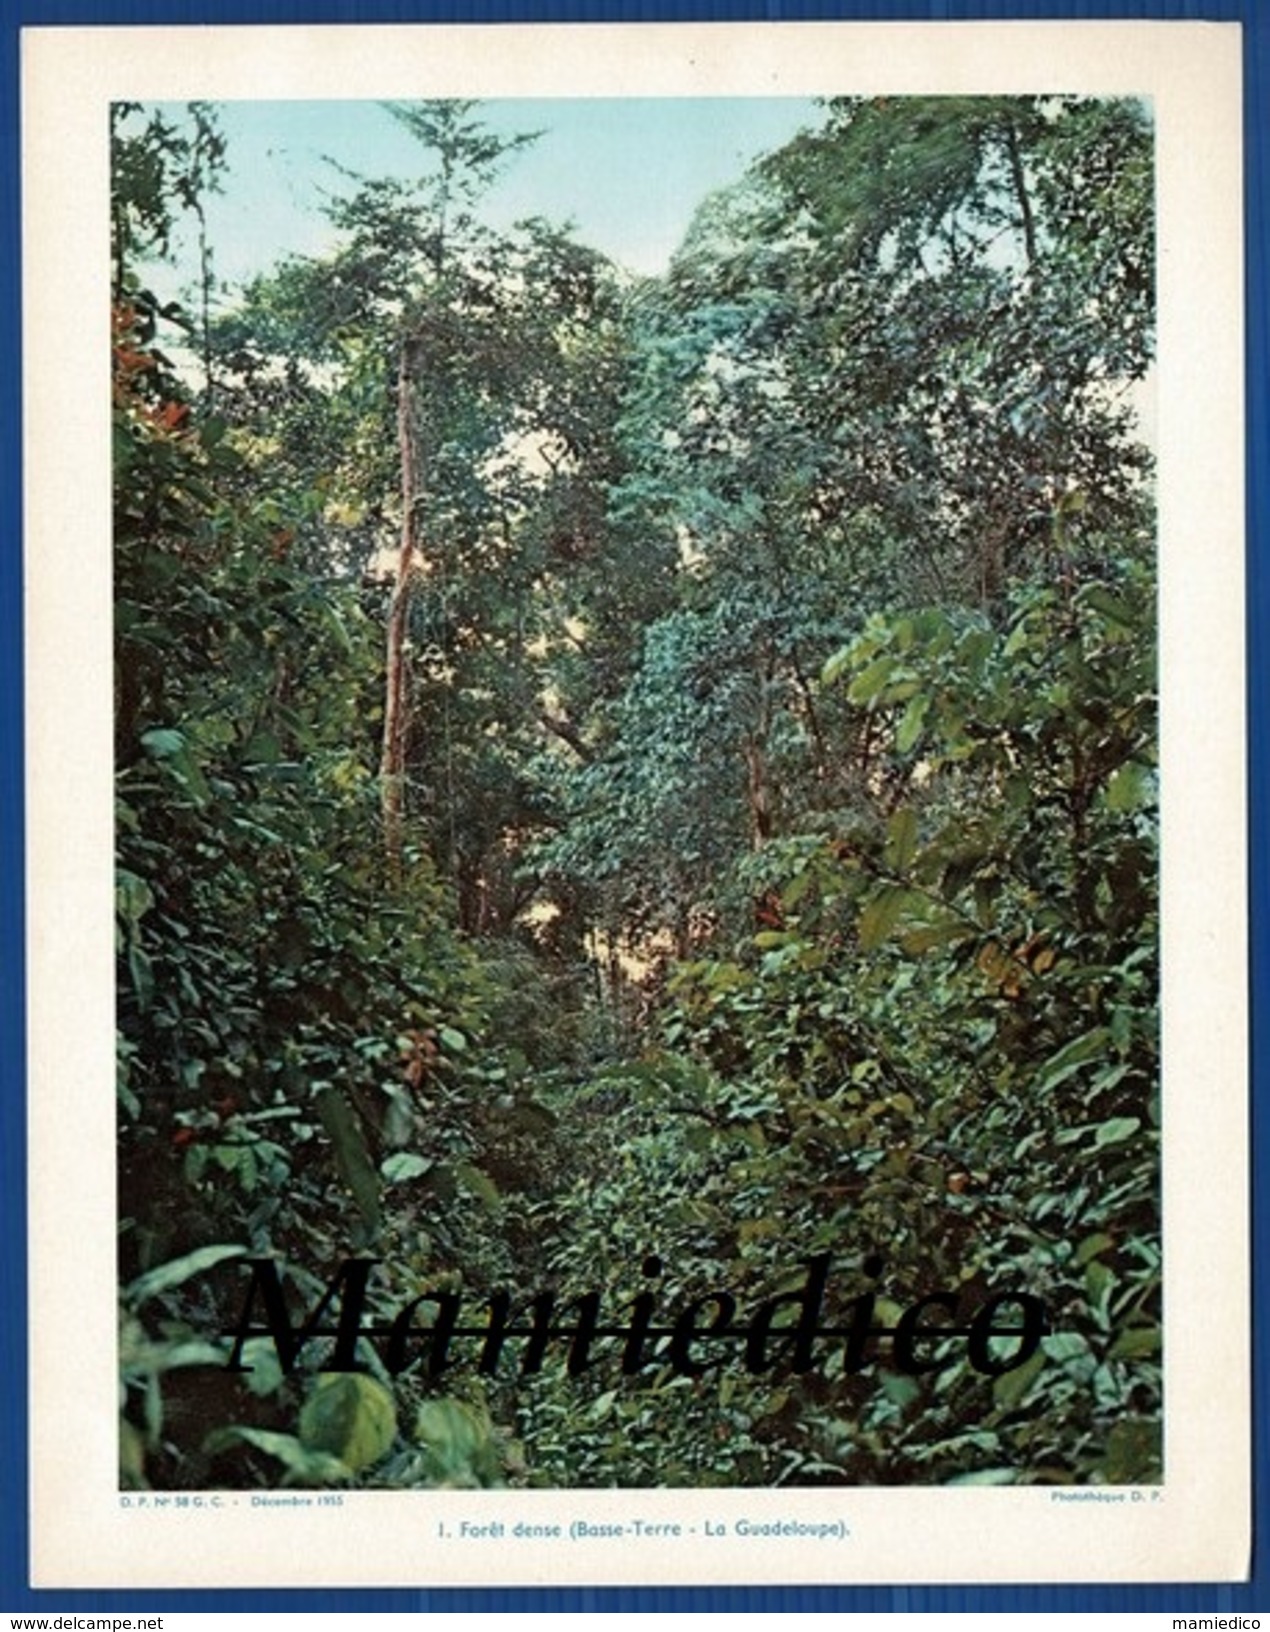 1955 " Petites colonies françaises" Guadeloupe-Guyane-Djibouti-etc... 8 Photos couleurs sur bristol rigide 21/27 cm